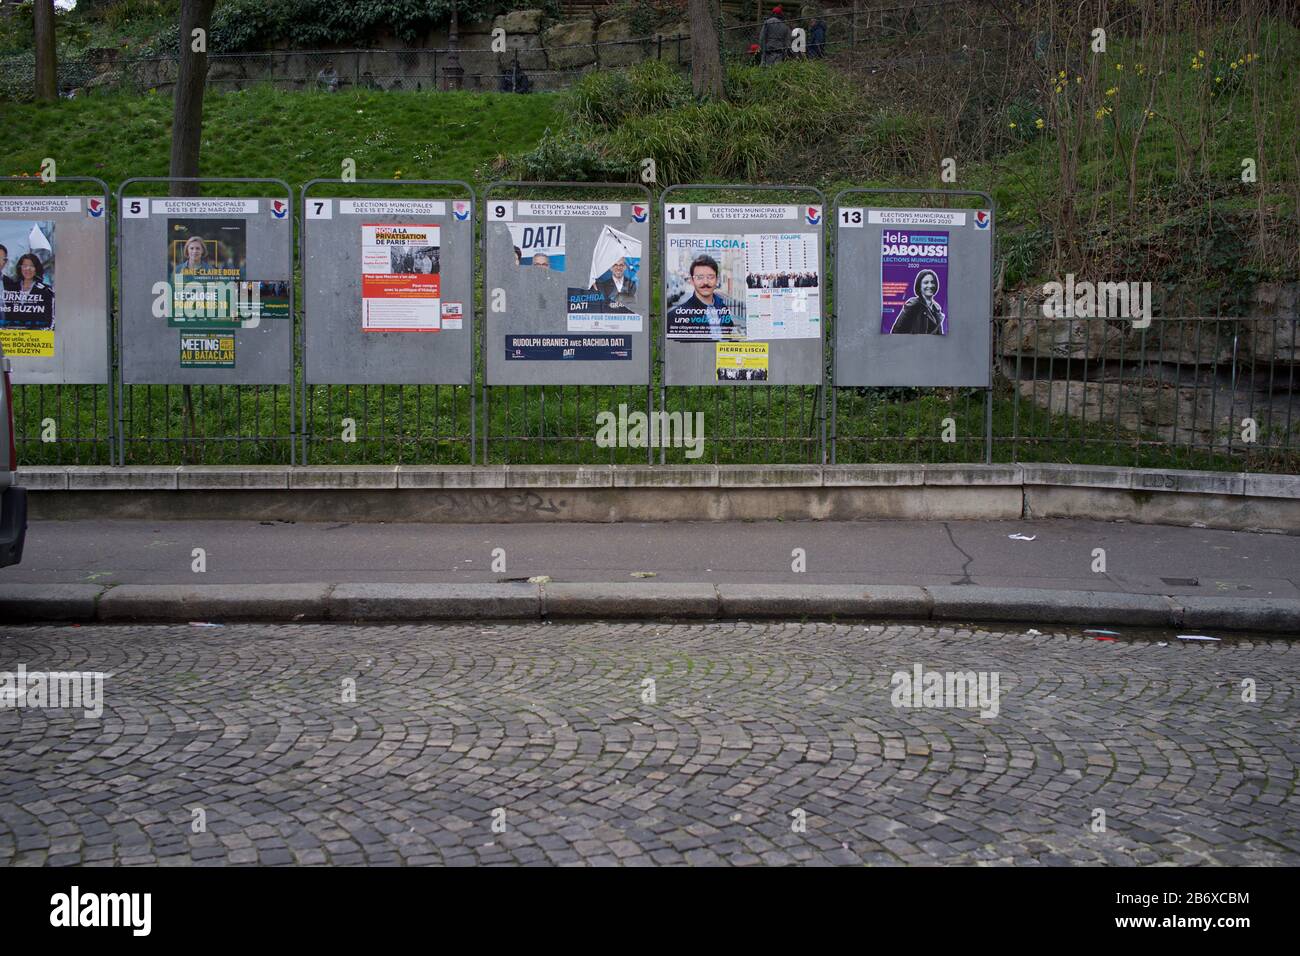 Afficher des groupes de candidats aux élections municipales françaises, rue Ronsard, Montmartre, 75018 Paris, France, mars 2020 Banque D'Images